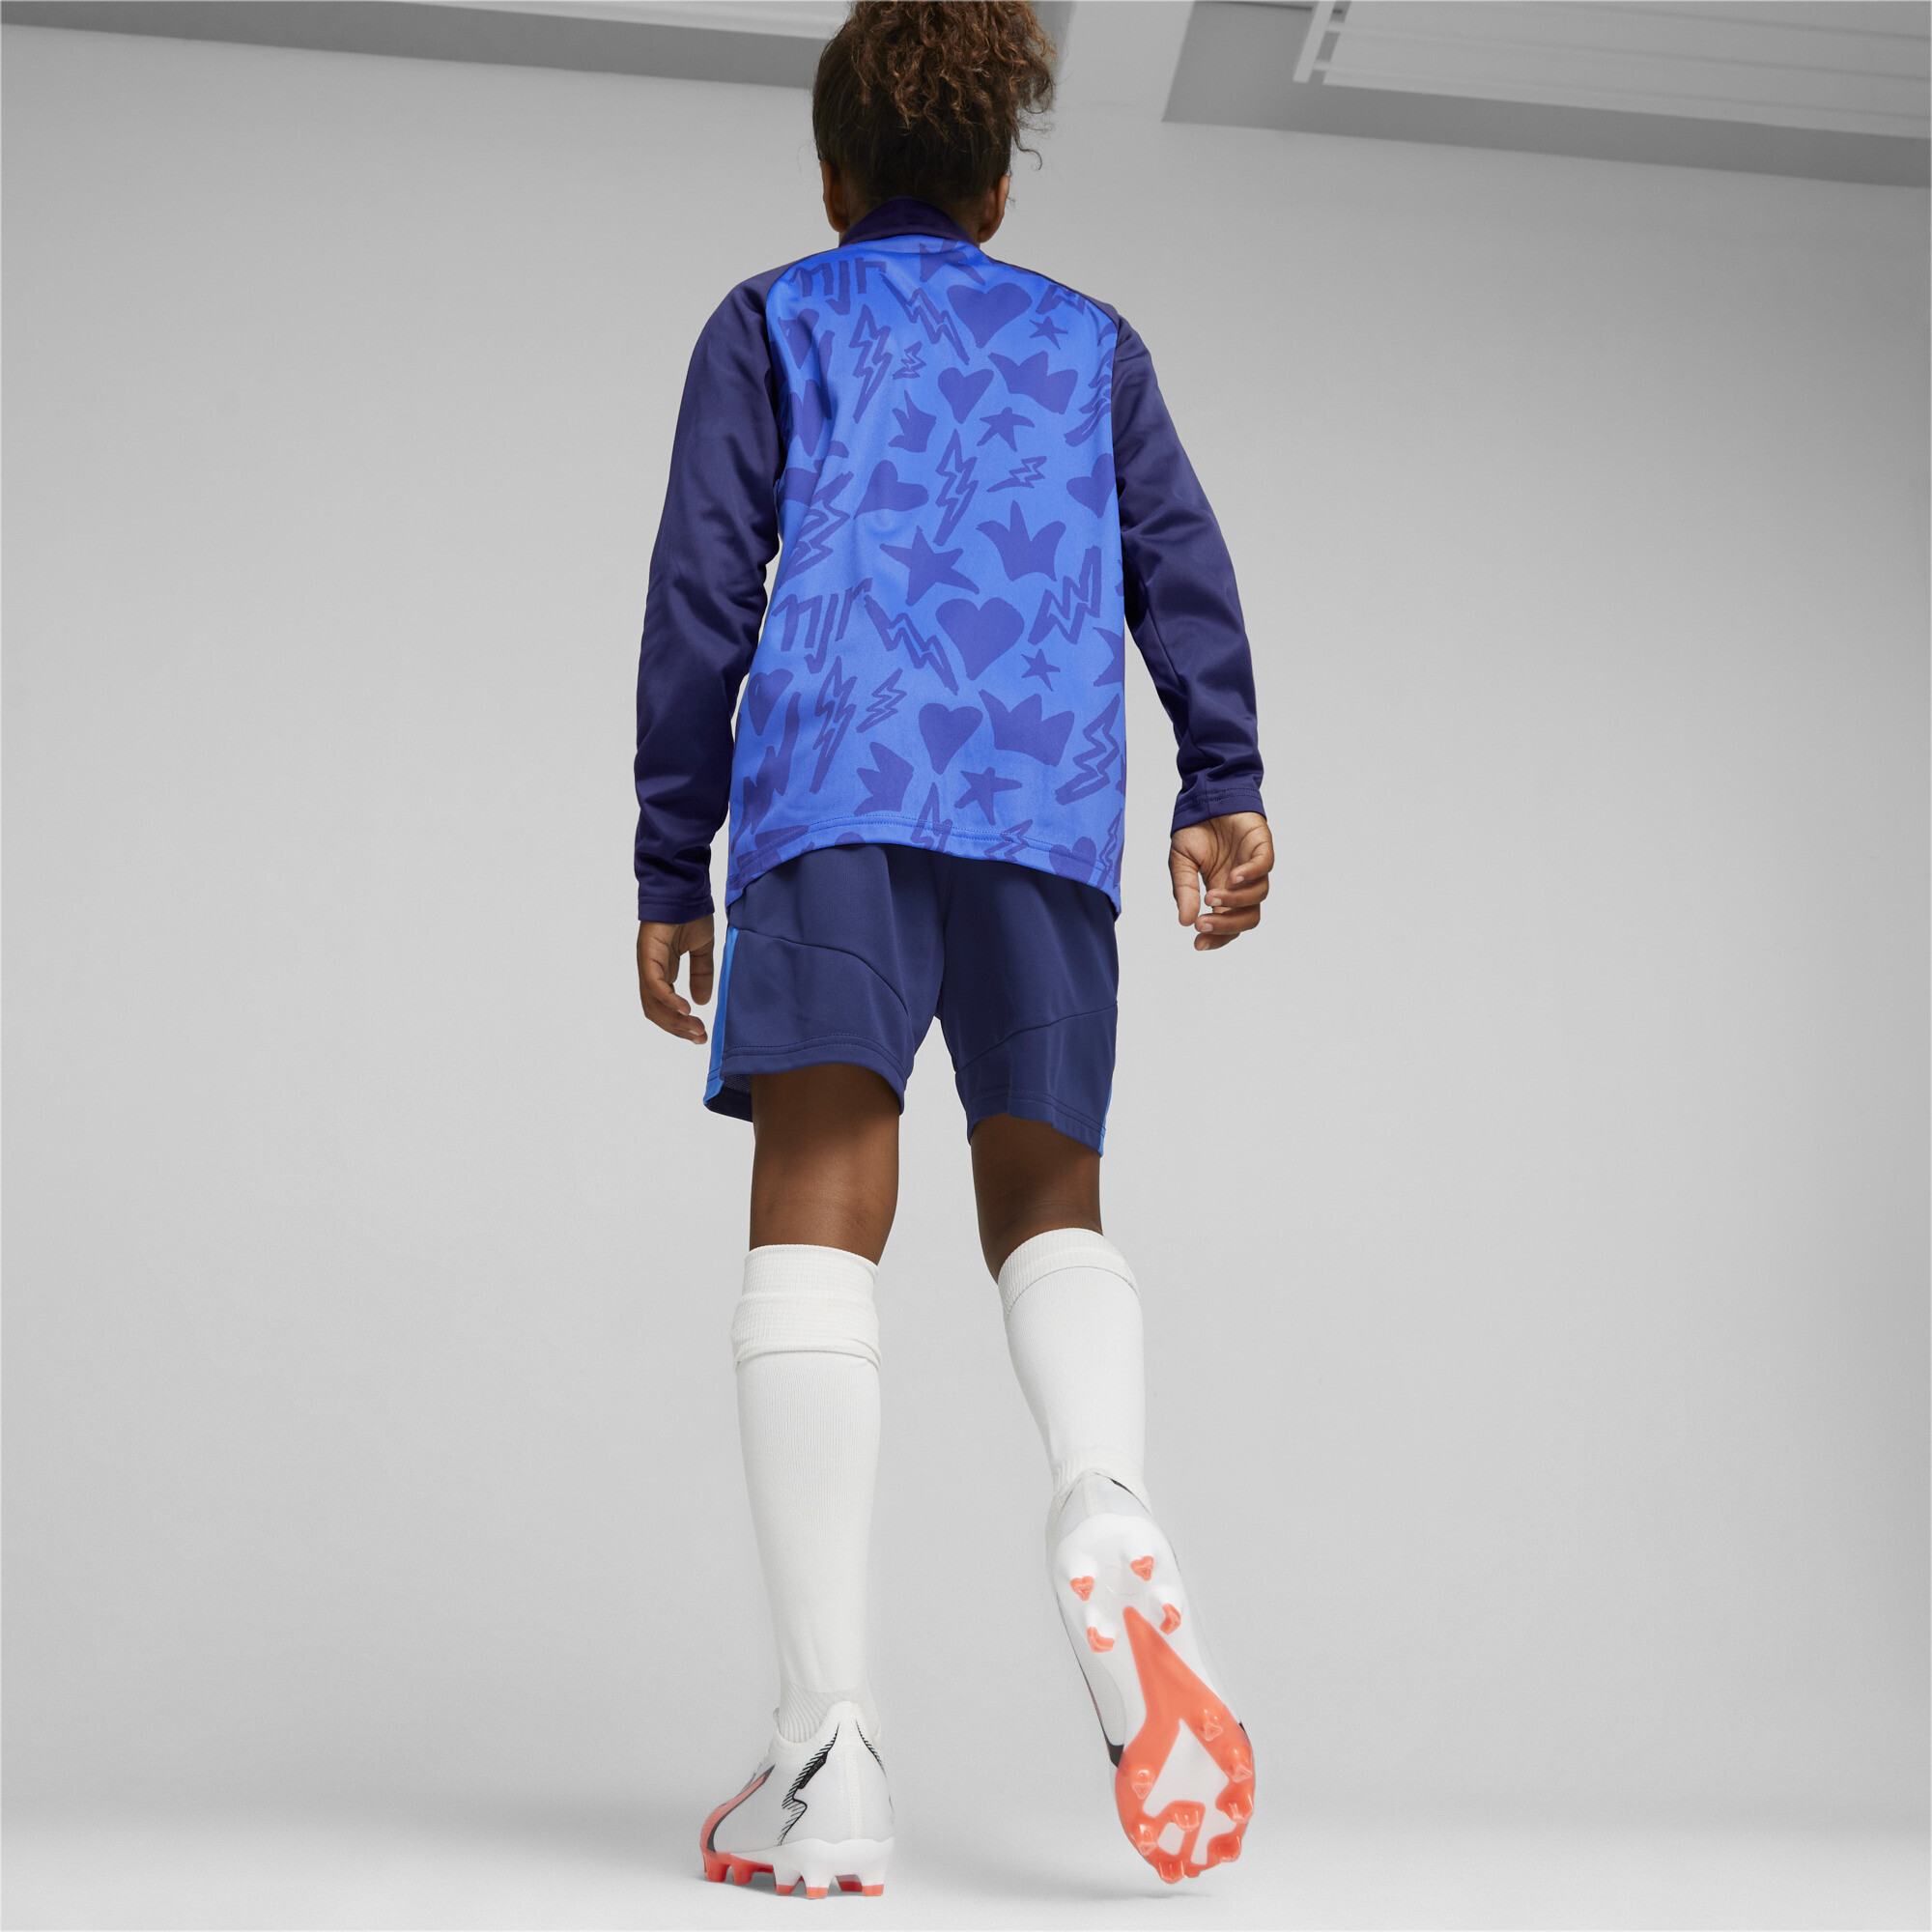 PUMA Neymar Jr Football Shorts In Blue, Size 15-16 Youth